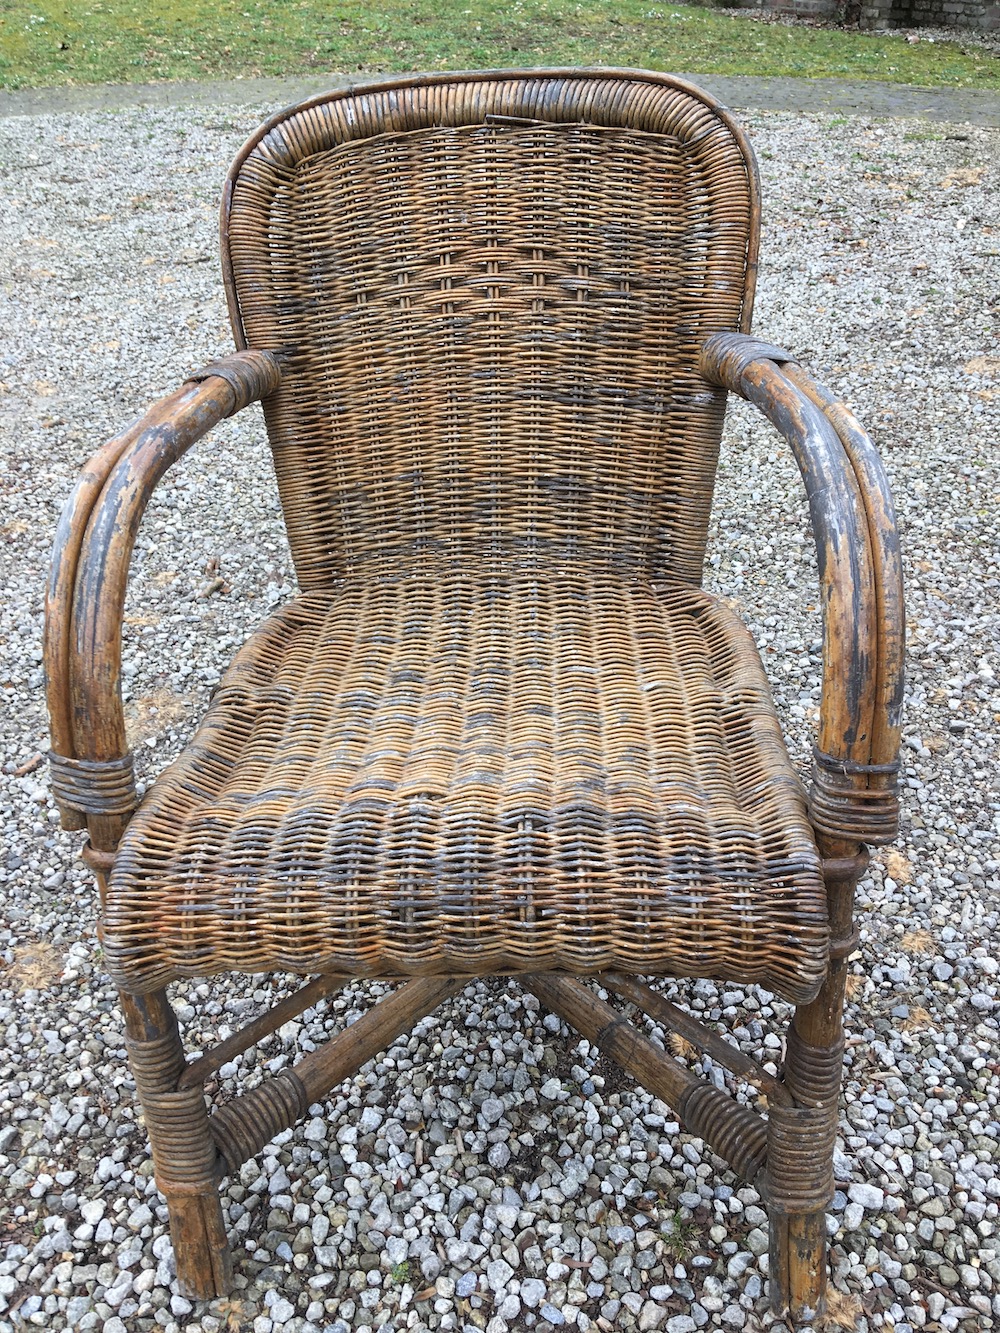 vintage garden chairs, garden chairs, rattan, rattan chairs